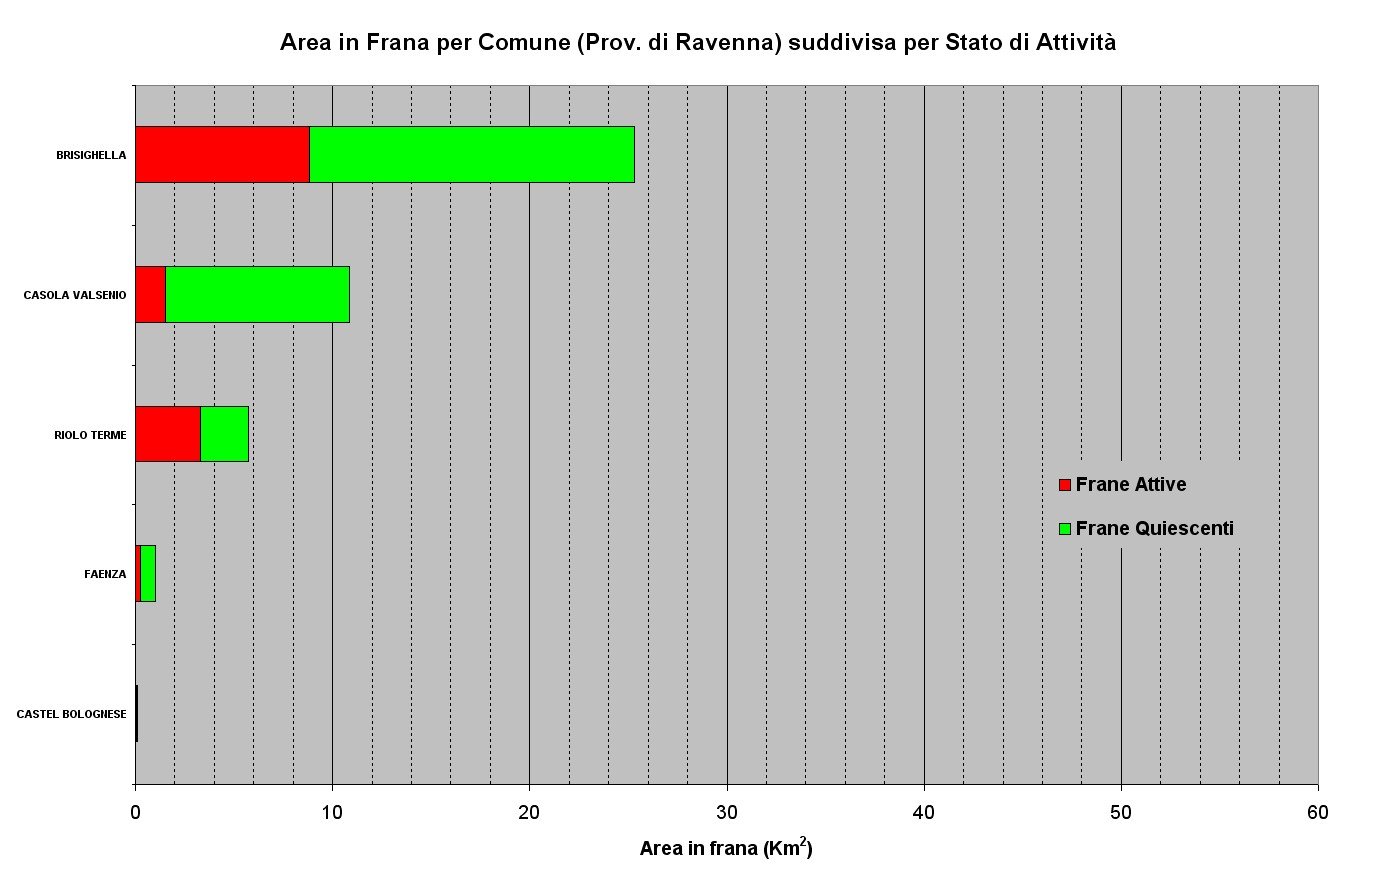 Aree in Frana relative ai Comuni della Provincia di Ravenna ordinate per abbondanza e suddivise per stato di attività